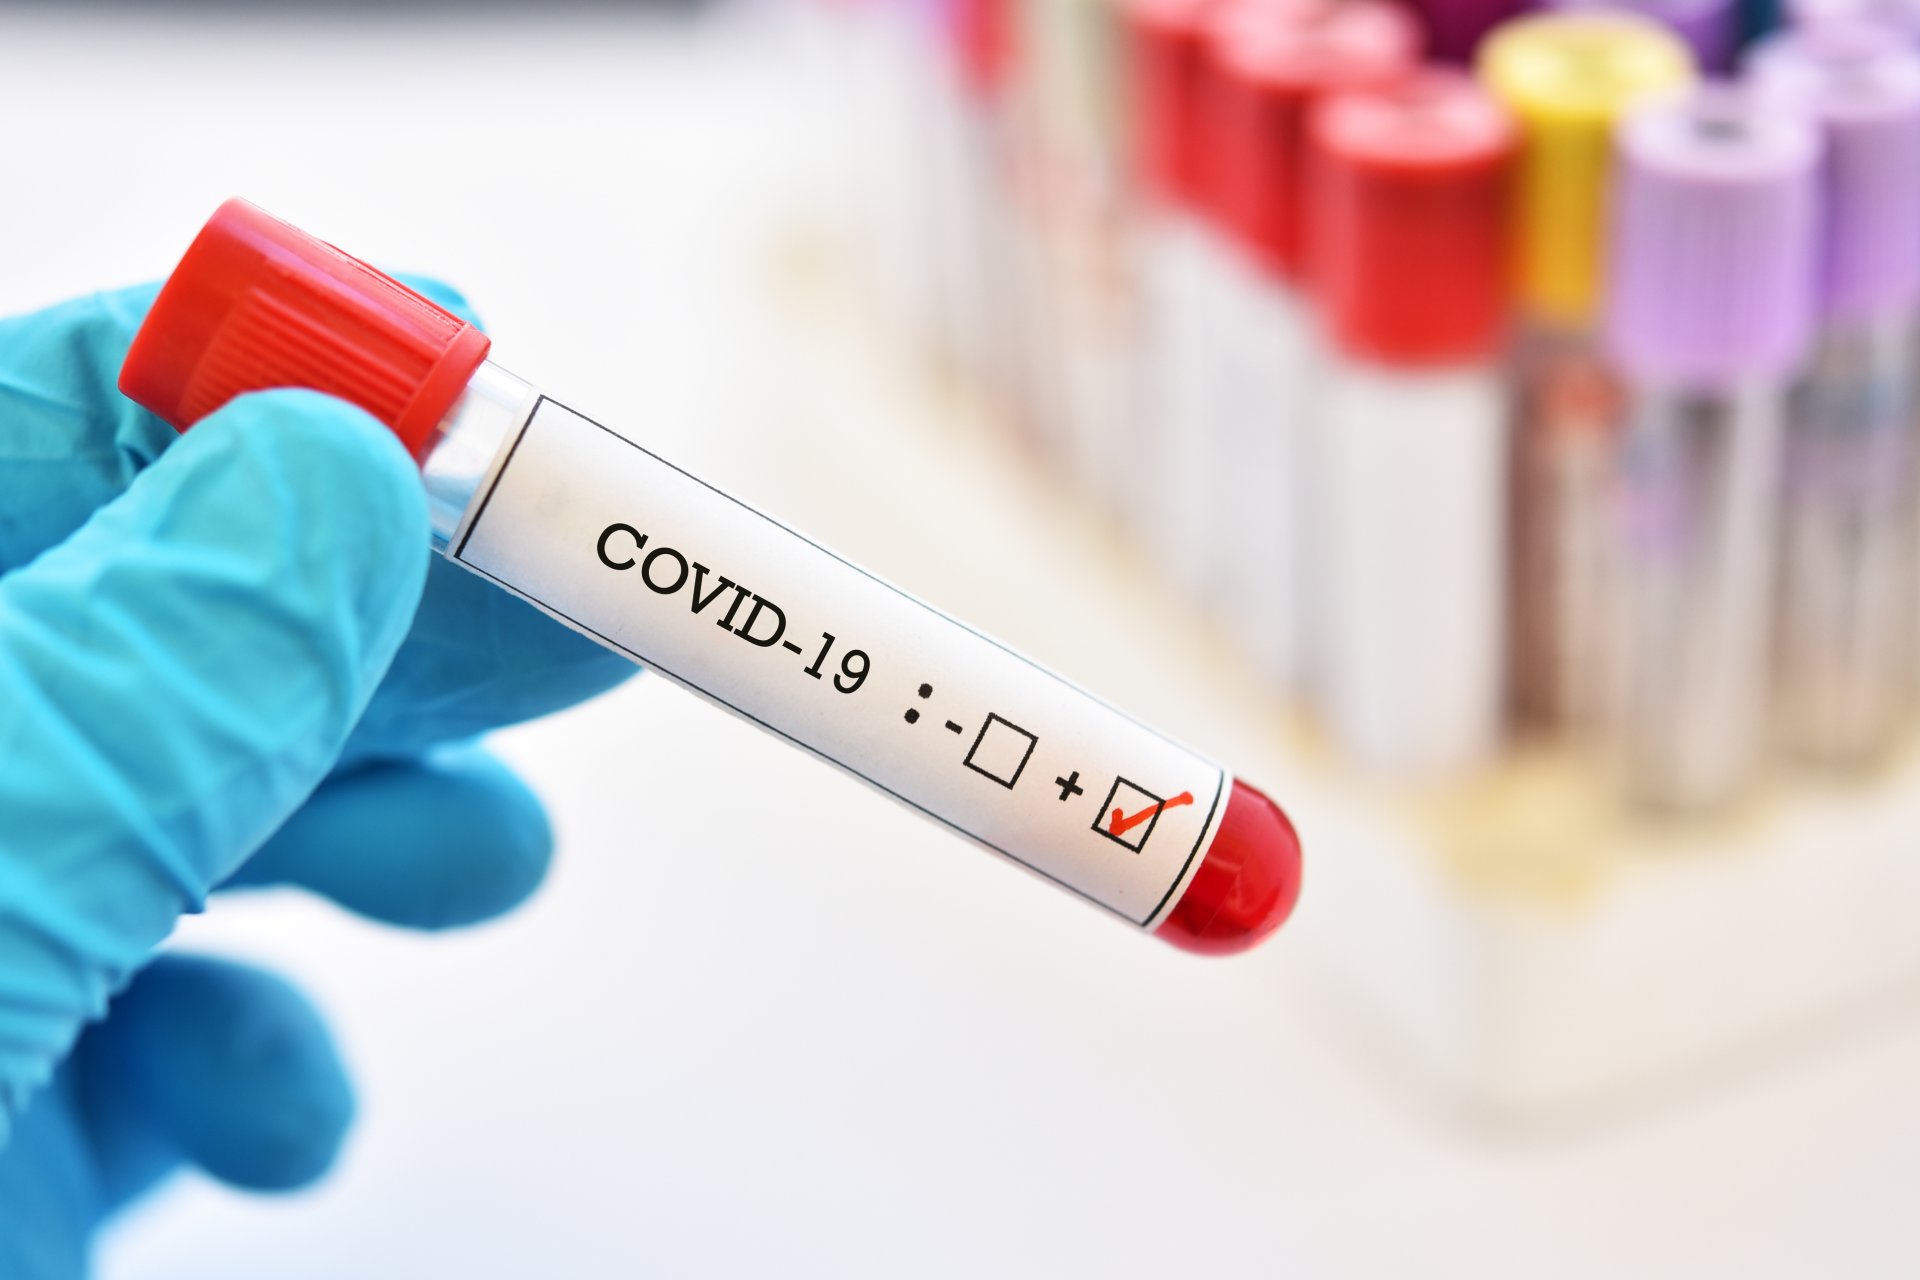 Д.Нямхүү: ОХУ-аас ирсэн 13 хүнээс коронавирусийн халдвар илэрч, батлагдсан тохиолдол 161 боллоо